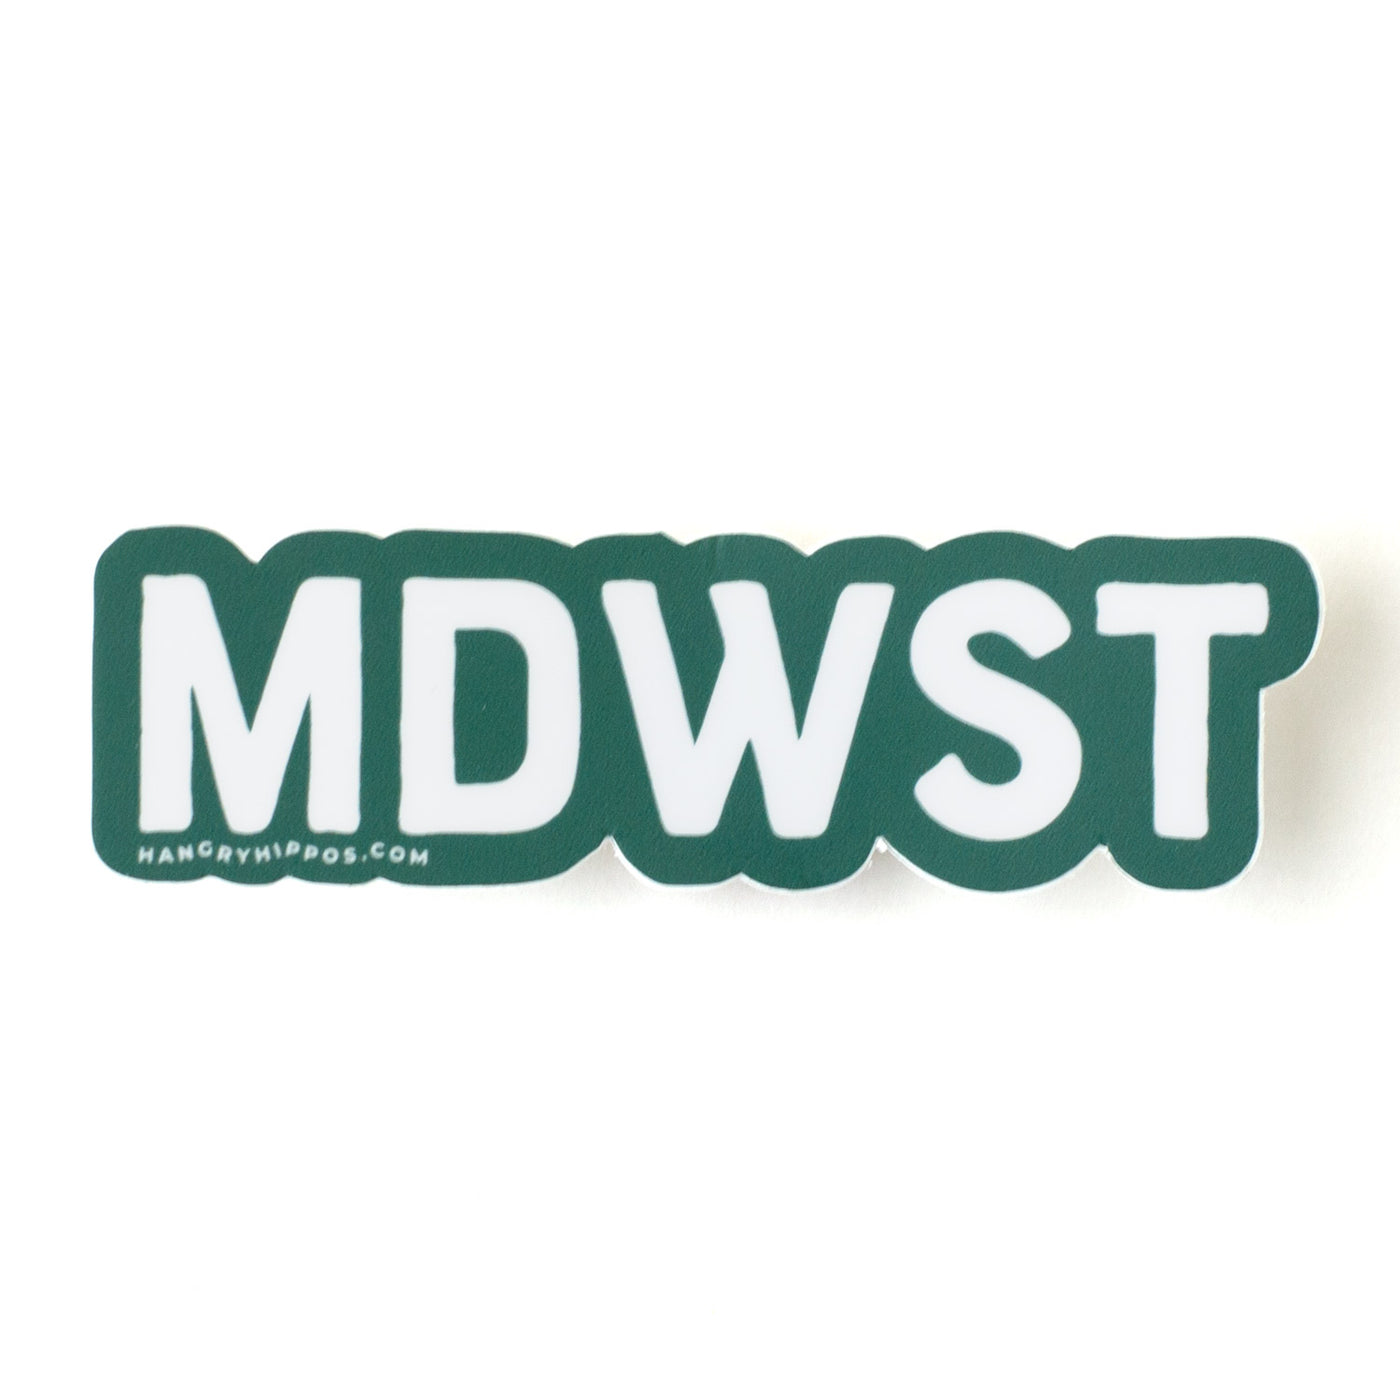 MDWST Sticker